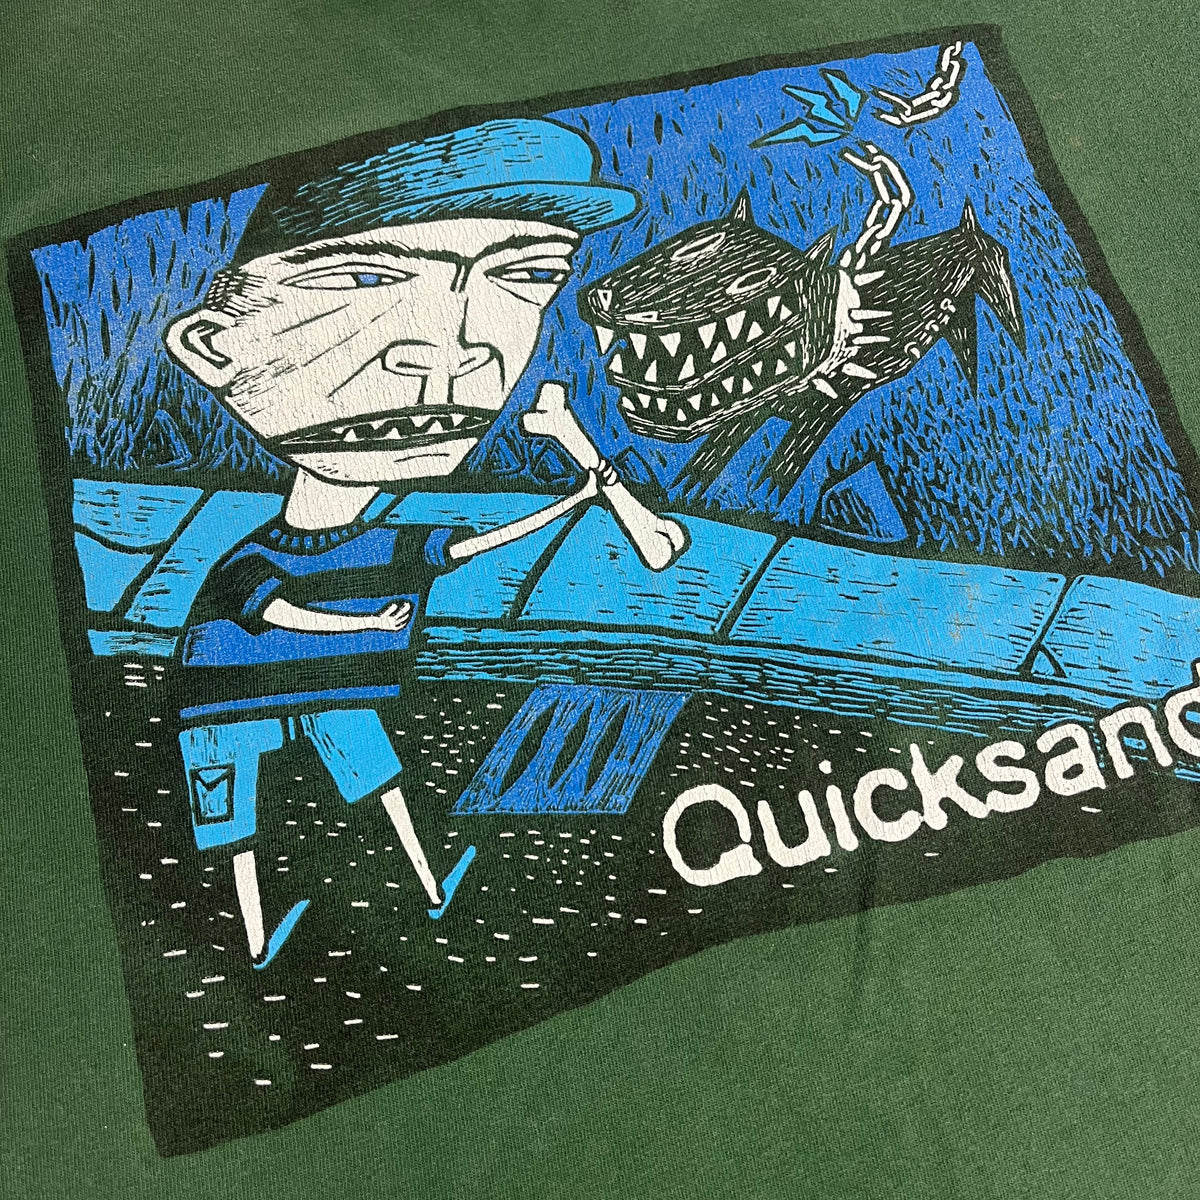 Vintage Quicksand &quot;Slip&quot; T-Shirt